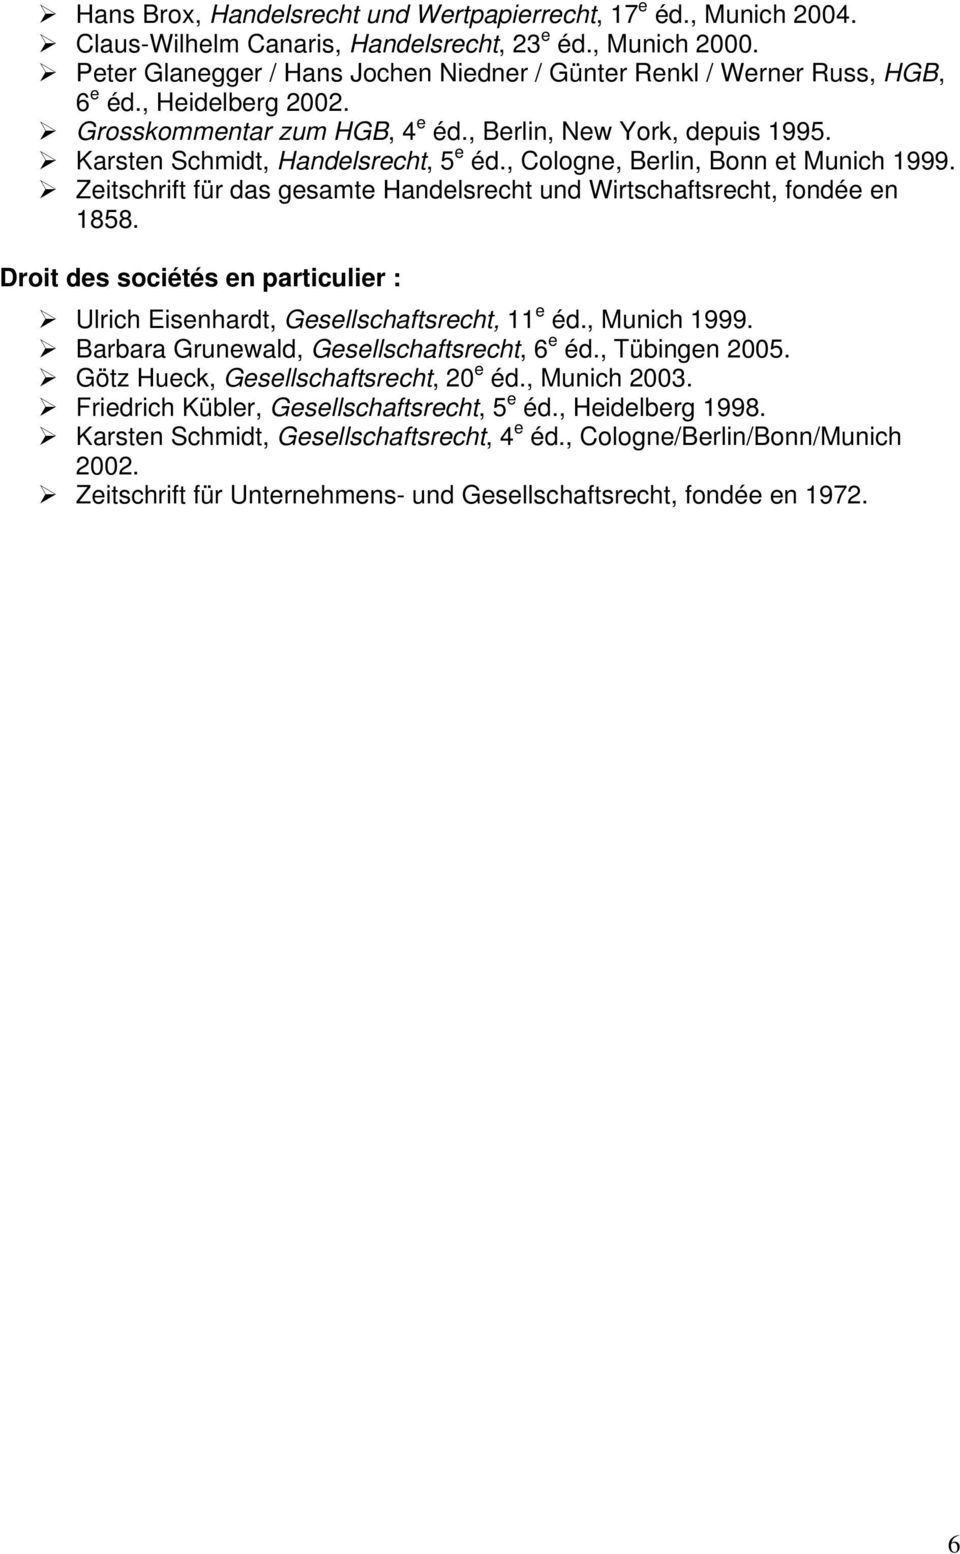 Karsten Schmidt, Handelsrecht, 5 e éd., Cologne, Berlin, Bonn et Munich 1999. Zeitschrift für das gesamte Handelsrecht und Wirtschaftsrecht, fondée en 1858.